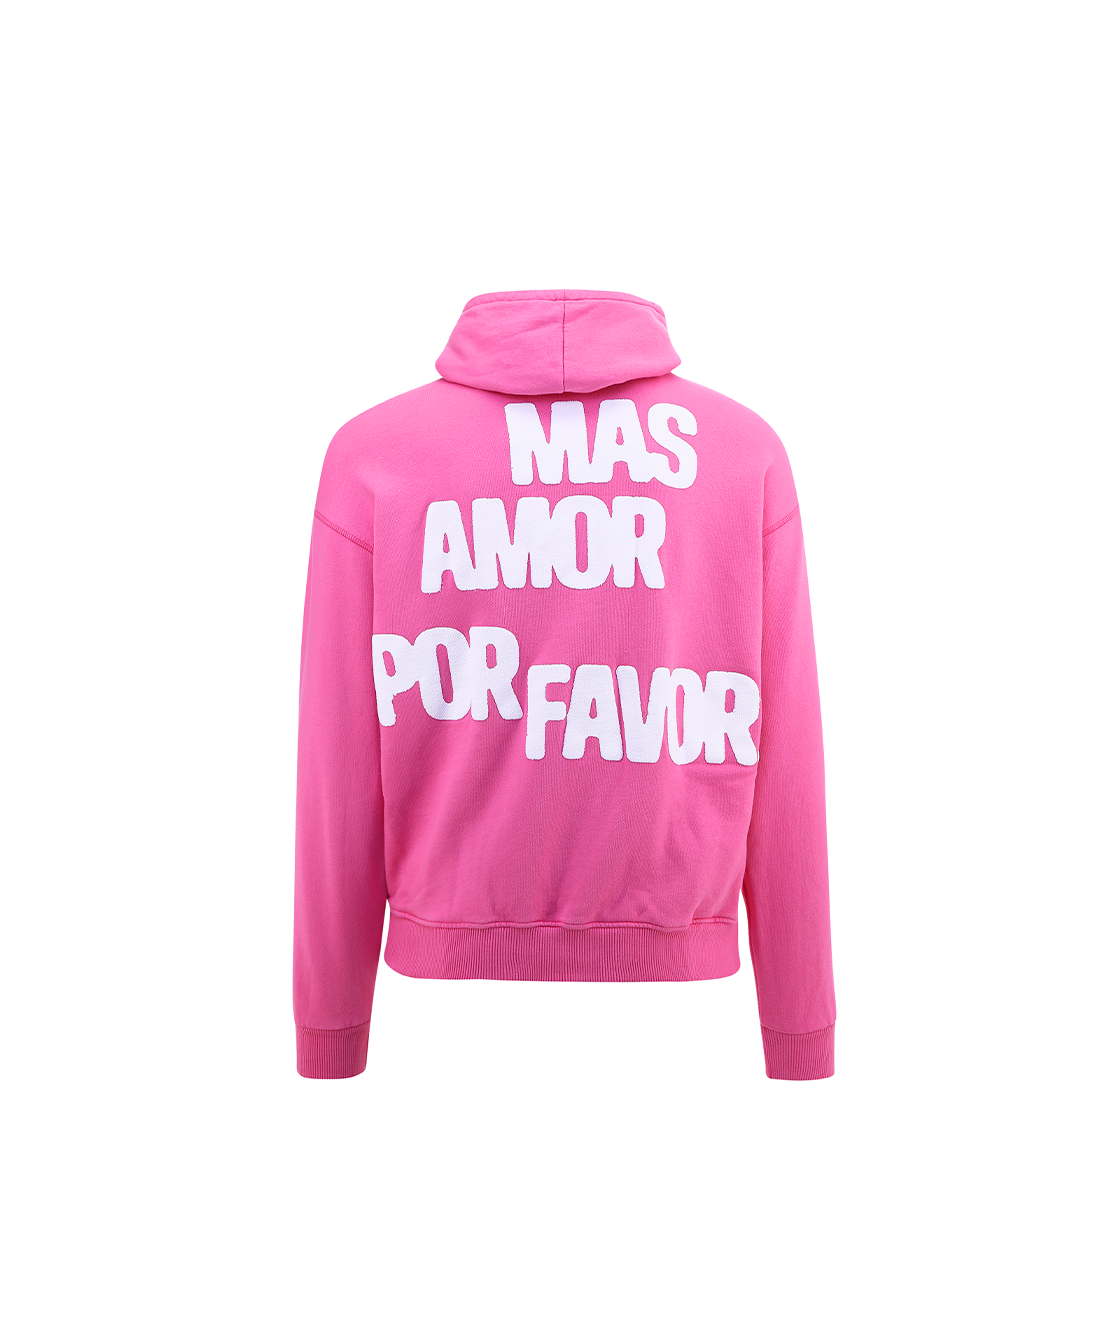 Mas amor por favor hoodie - pink